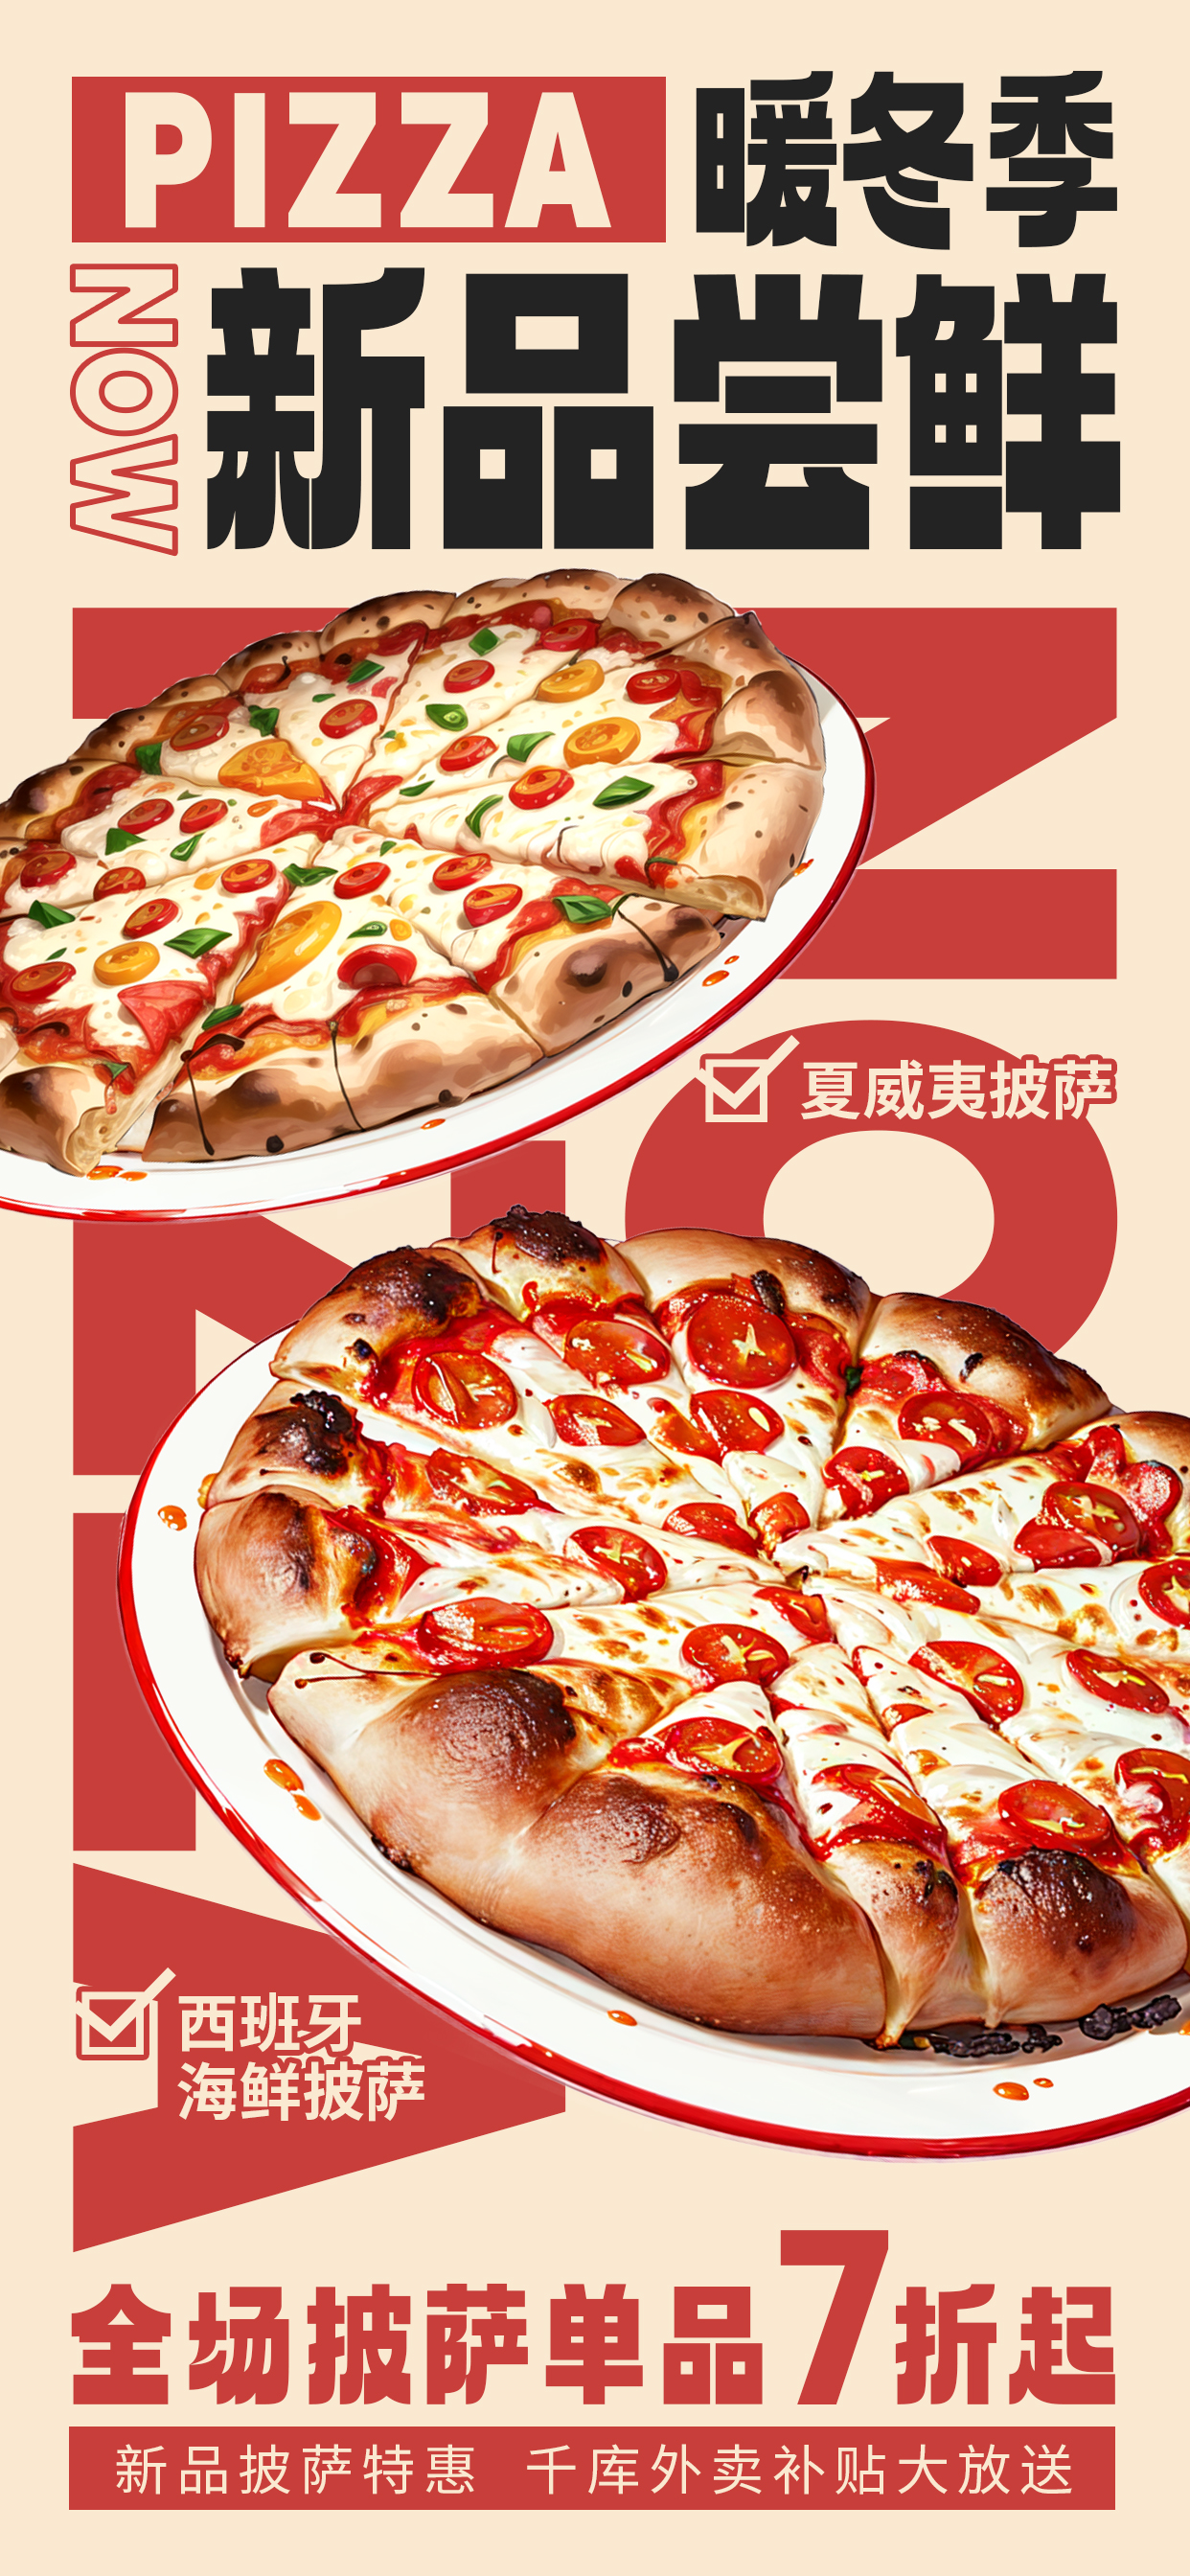 冬季上新暖冬美食披萨快餐红色广告宣传海报图片